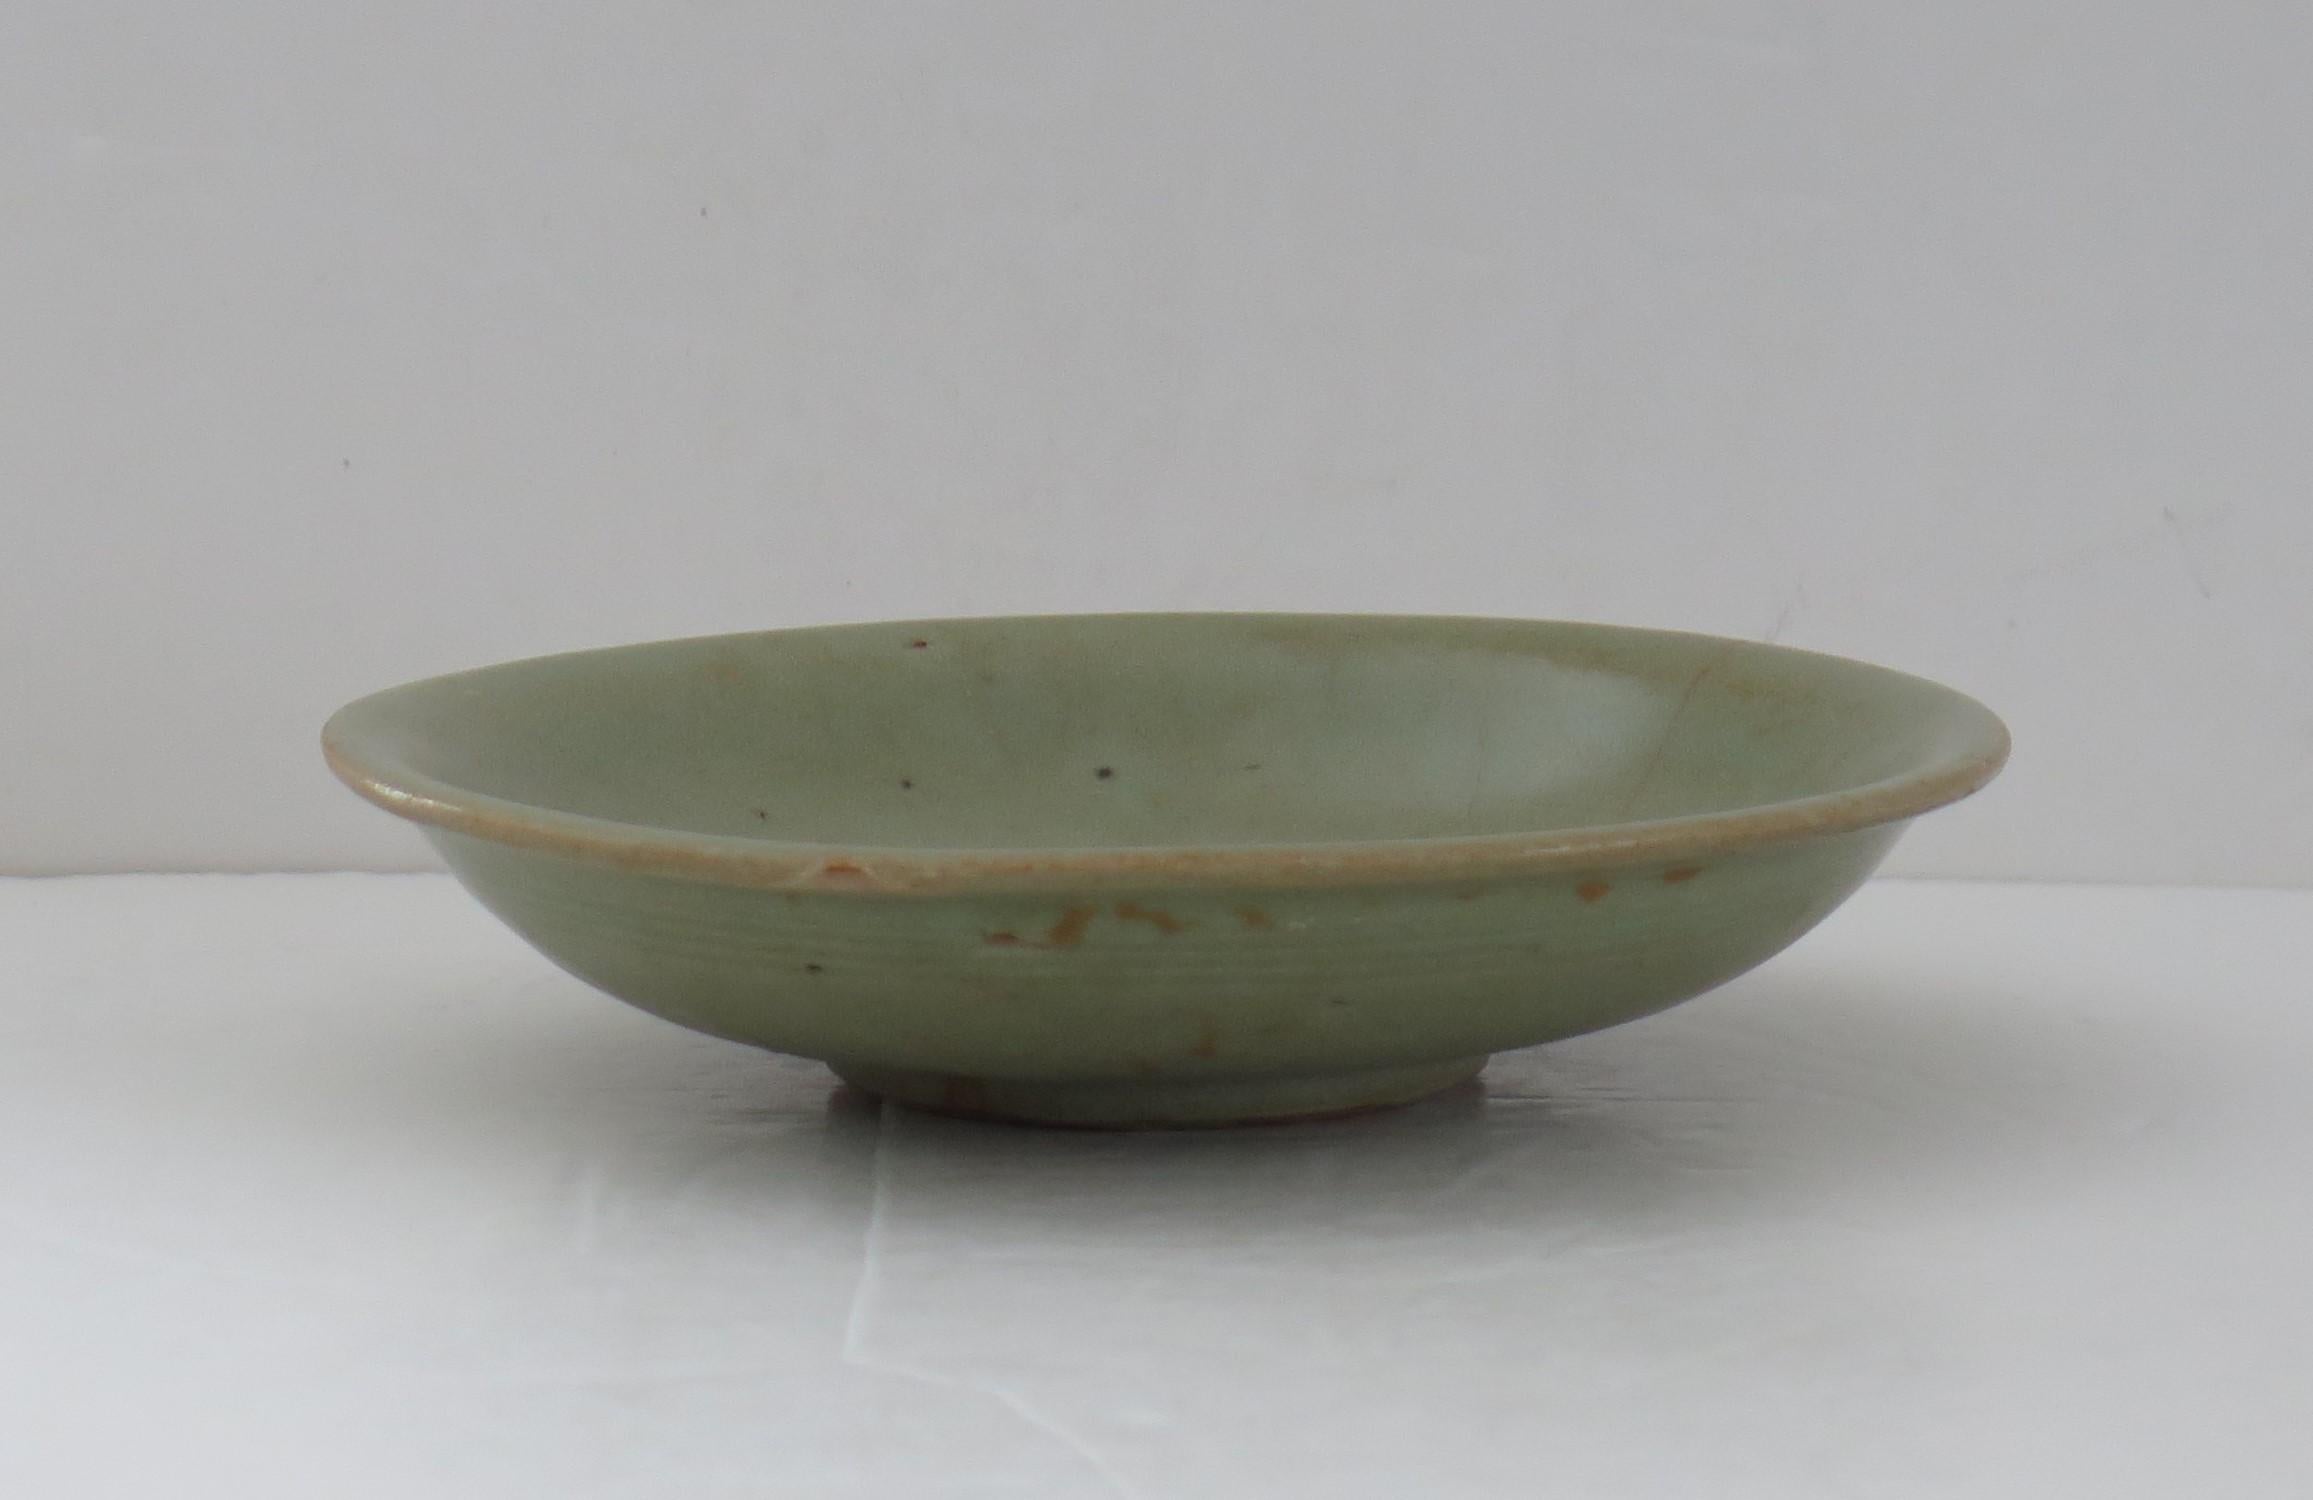 Dies ist ein sehr altes, interessantes chinesisches Steingut Longquan Celadon Schüssel oder Teller mit eingeschnittenen Dekor, die wir auf die Yuan-Dynastie, ca. 1300.

Die Schale ist gut getopft und steht auf einem niedrigen Fuß. 

Die Schale